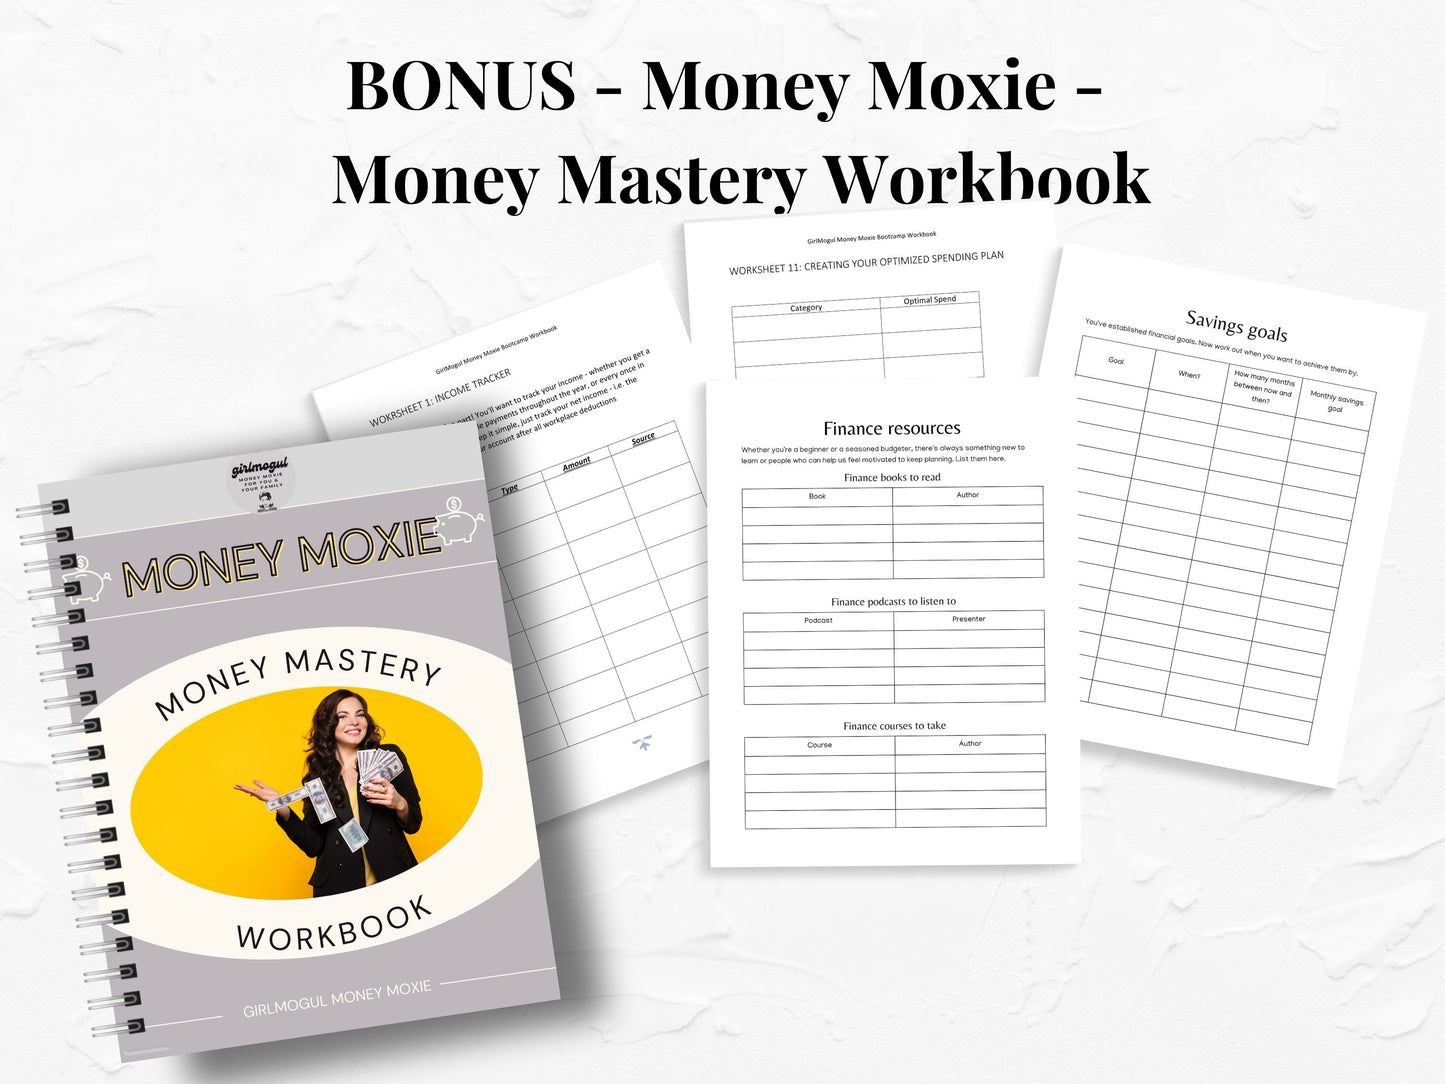 GirlMogul Budget Binder PLUS  Money Moxie Workbook